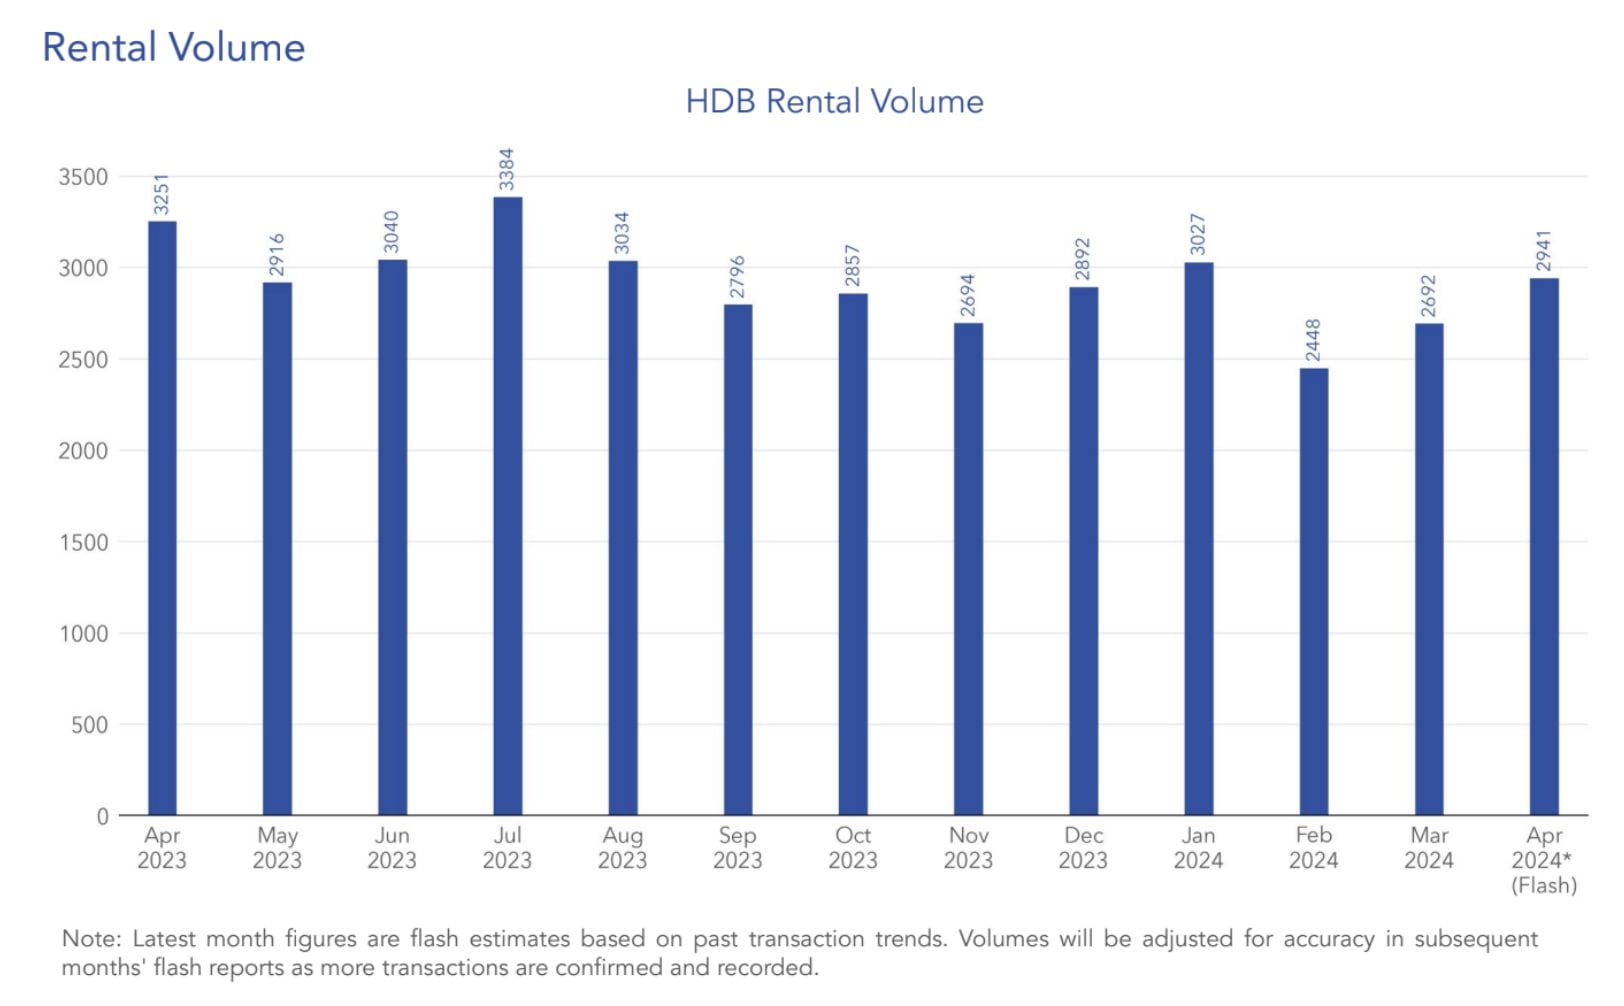 HDB Rental Volume